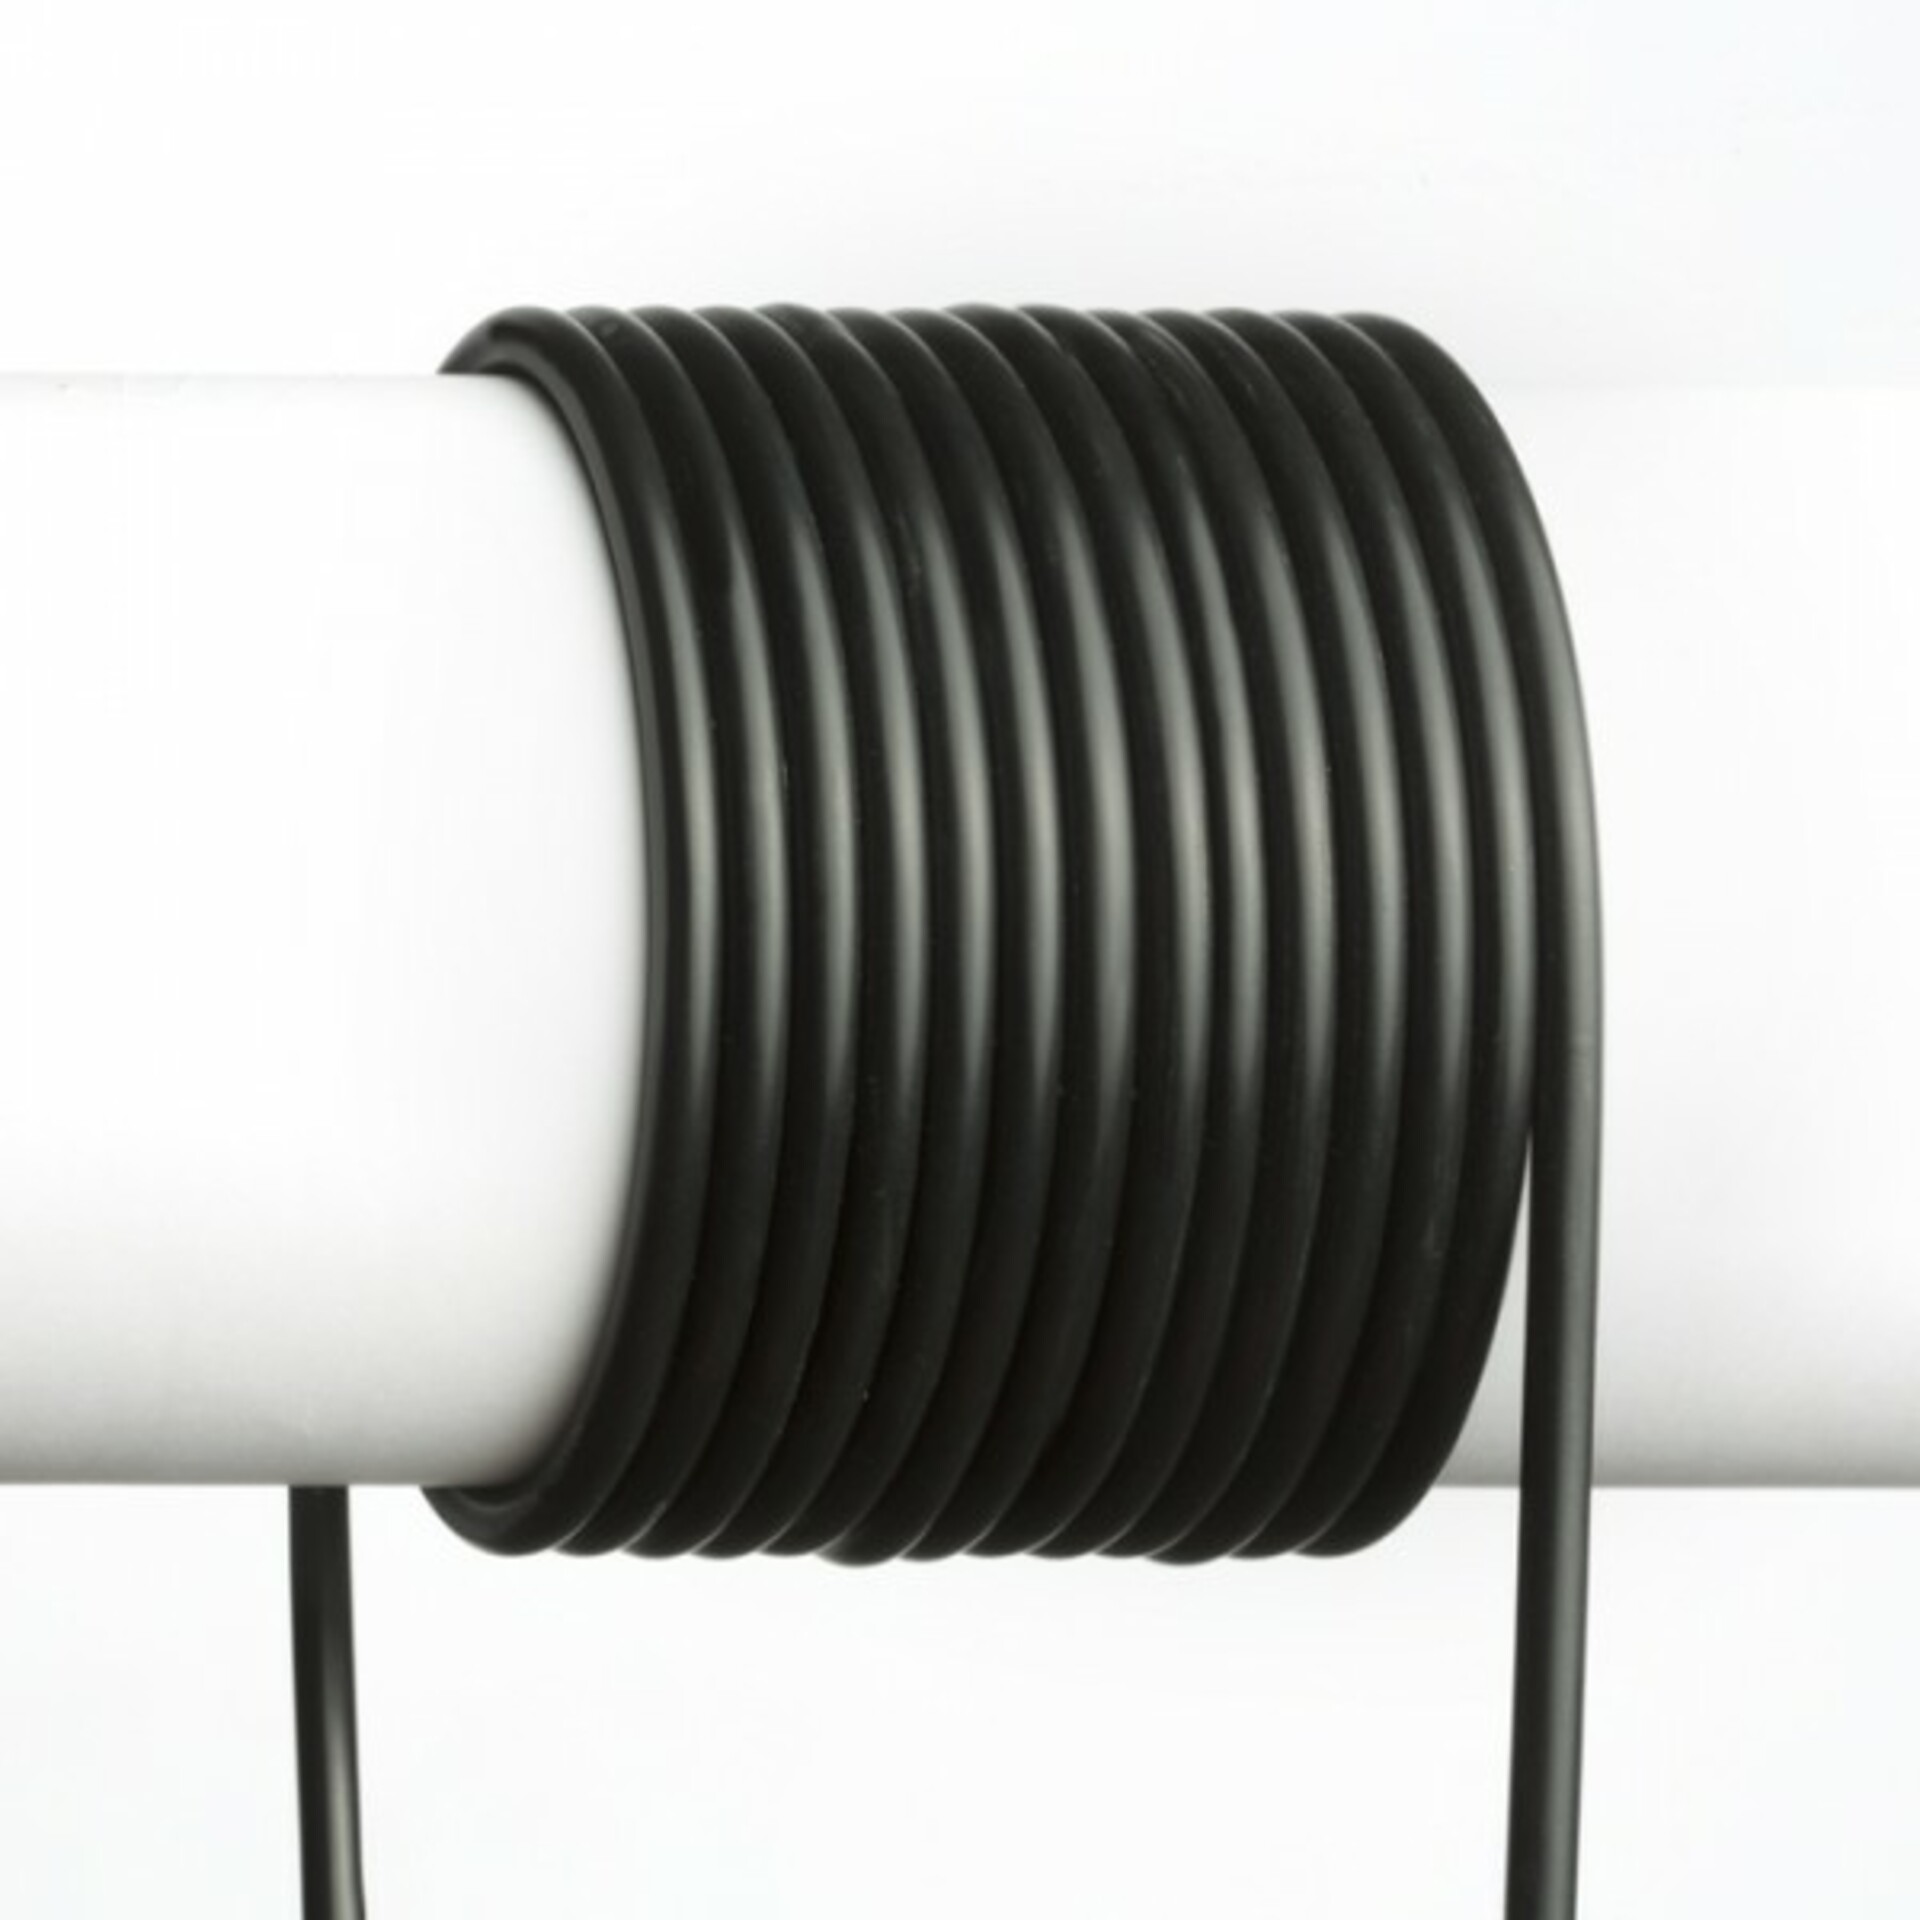 Levně RENDL FIT 3X0,75 1bm kabel černá R12230